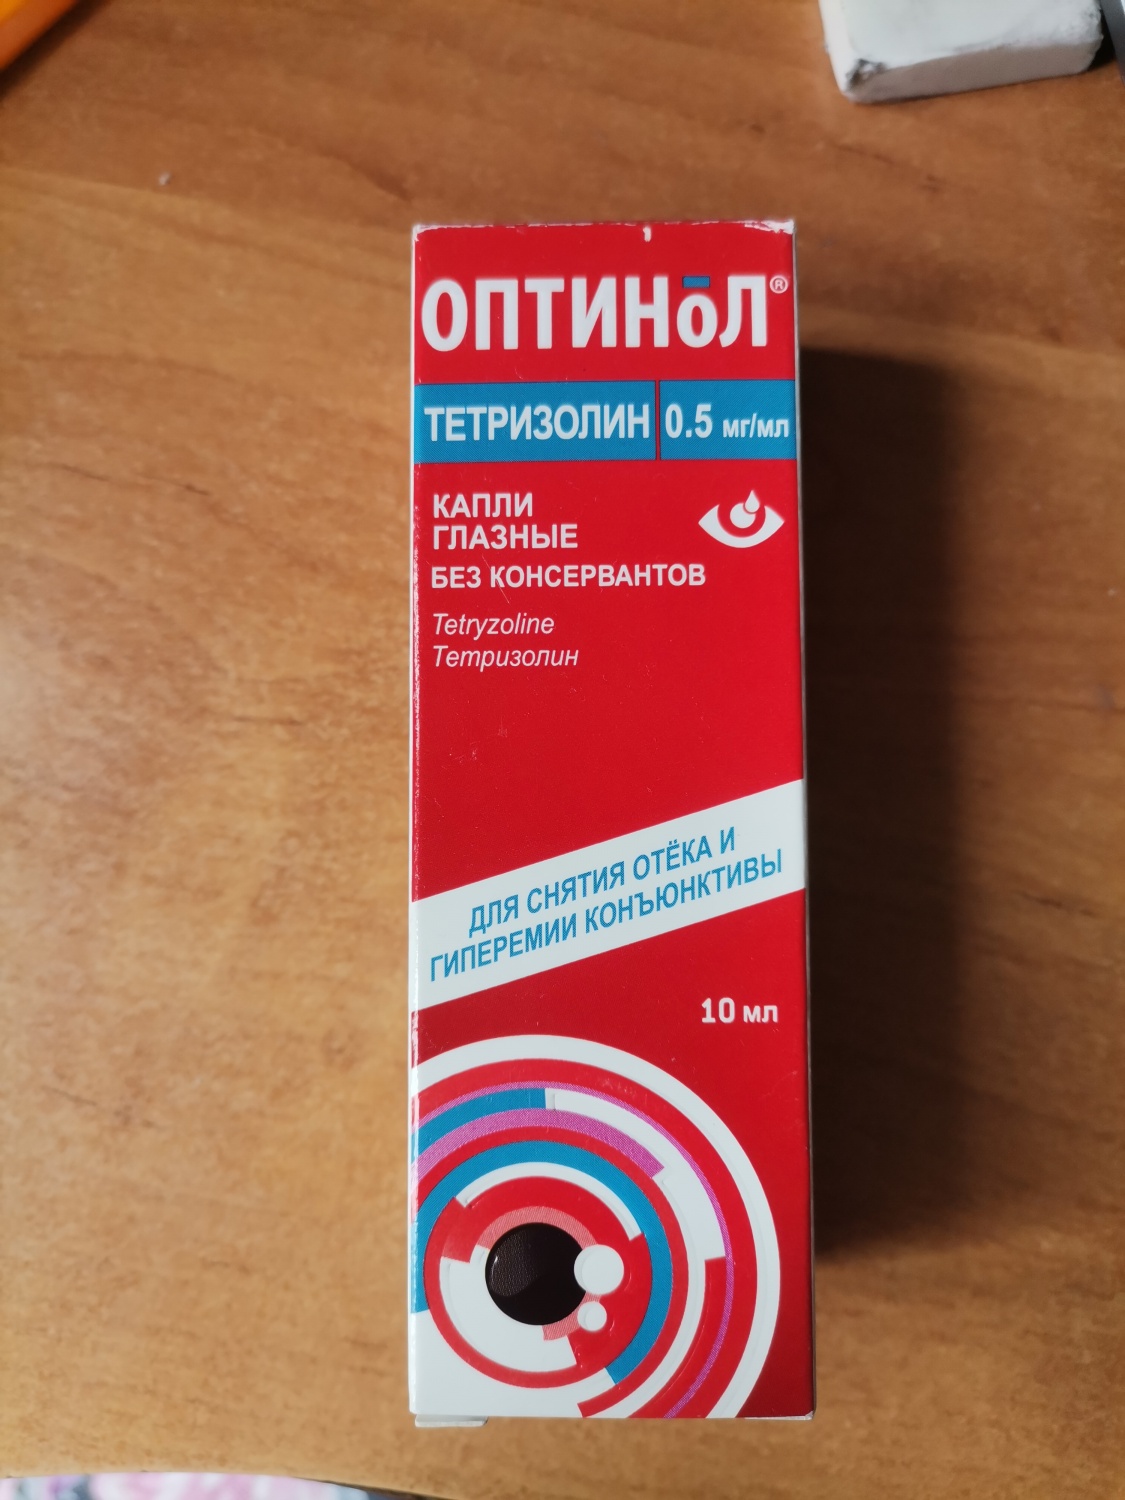 Оптинол глазные аналоги отзывы. Визин тетризолин. Оптинол тетризолин. Капли для глаз Оптинол. Тетризолин капли глазные.